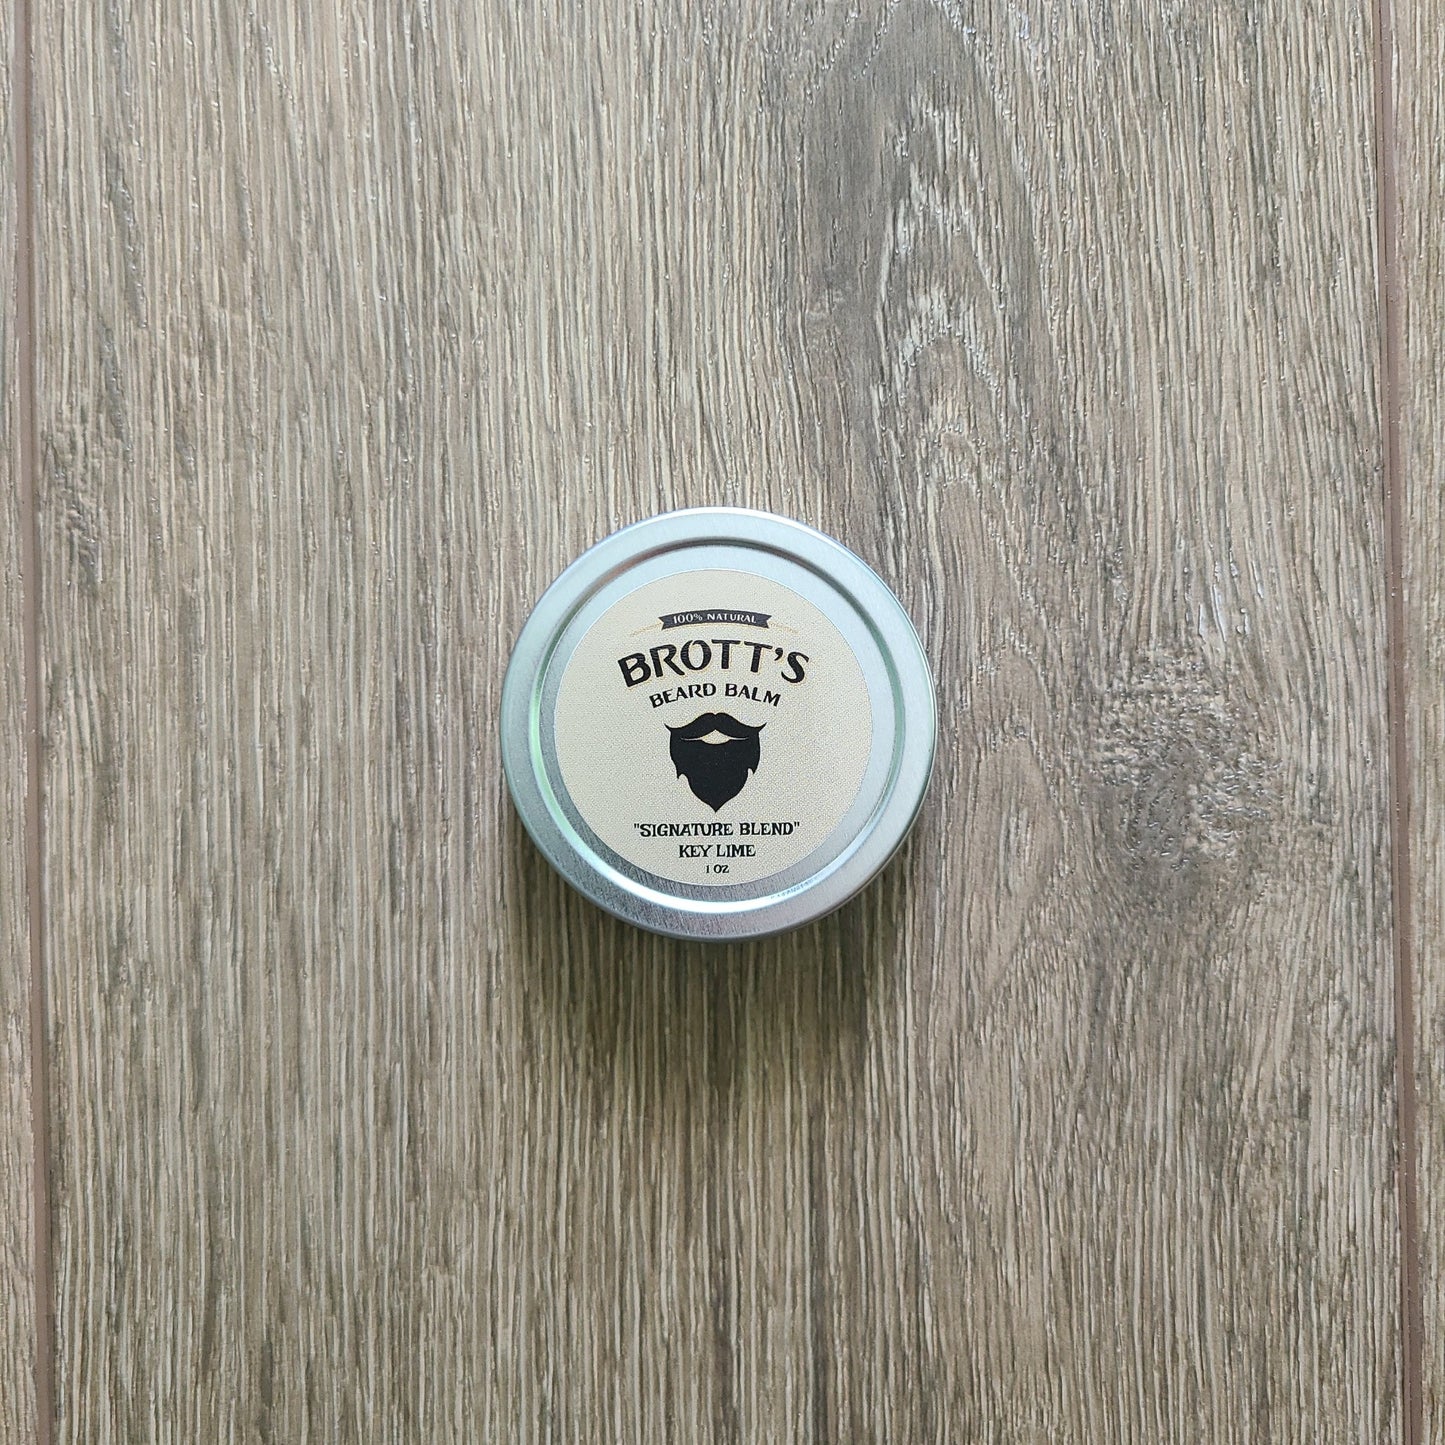 Key lime scented beard balm 1 ounce tin